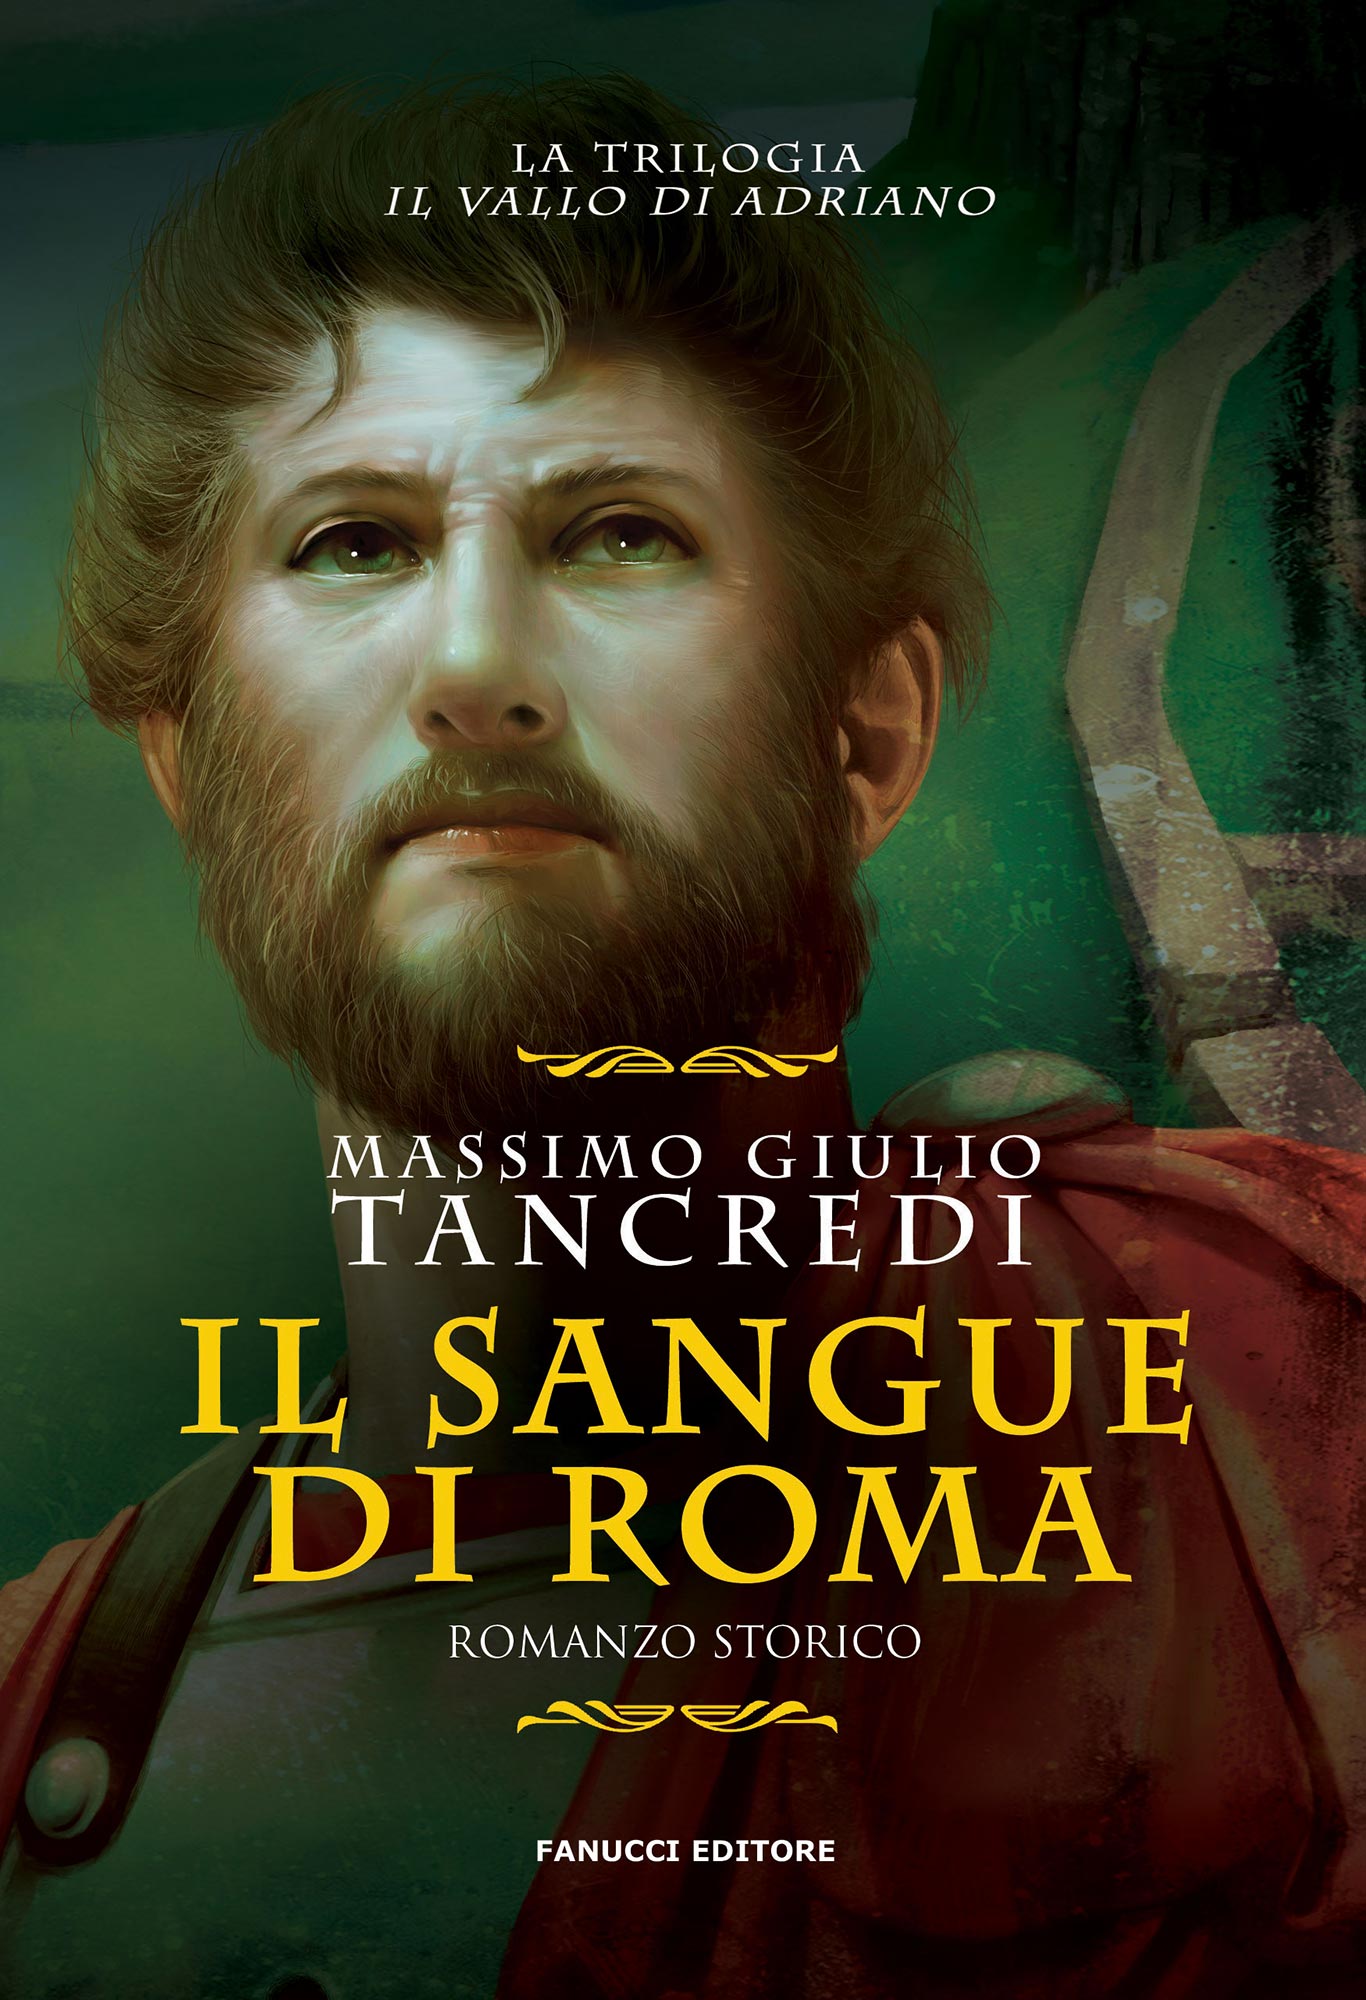 Il sangue di Roma - Il Vallo di Adriano #1